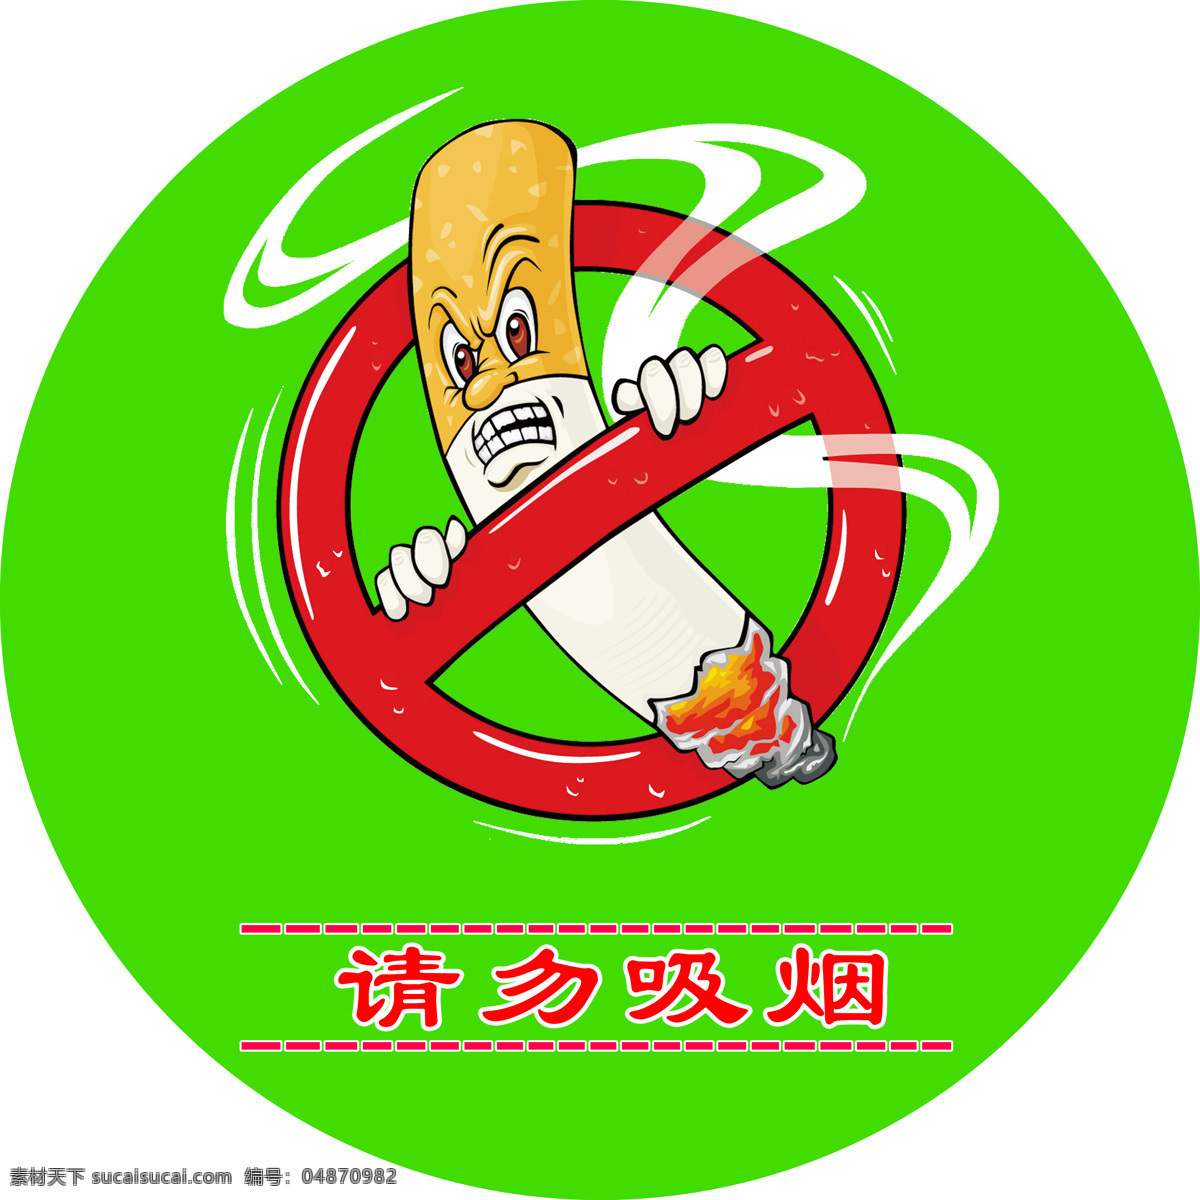 禁烟 广告 请勿 吸烟 标志 禁烟标志 绿色标志 请勿吸烟 烟雾 环保标志